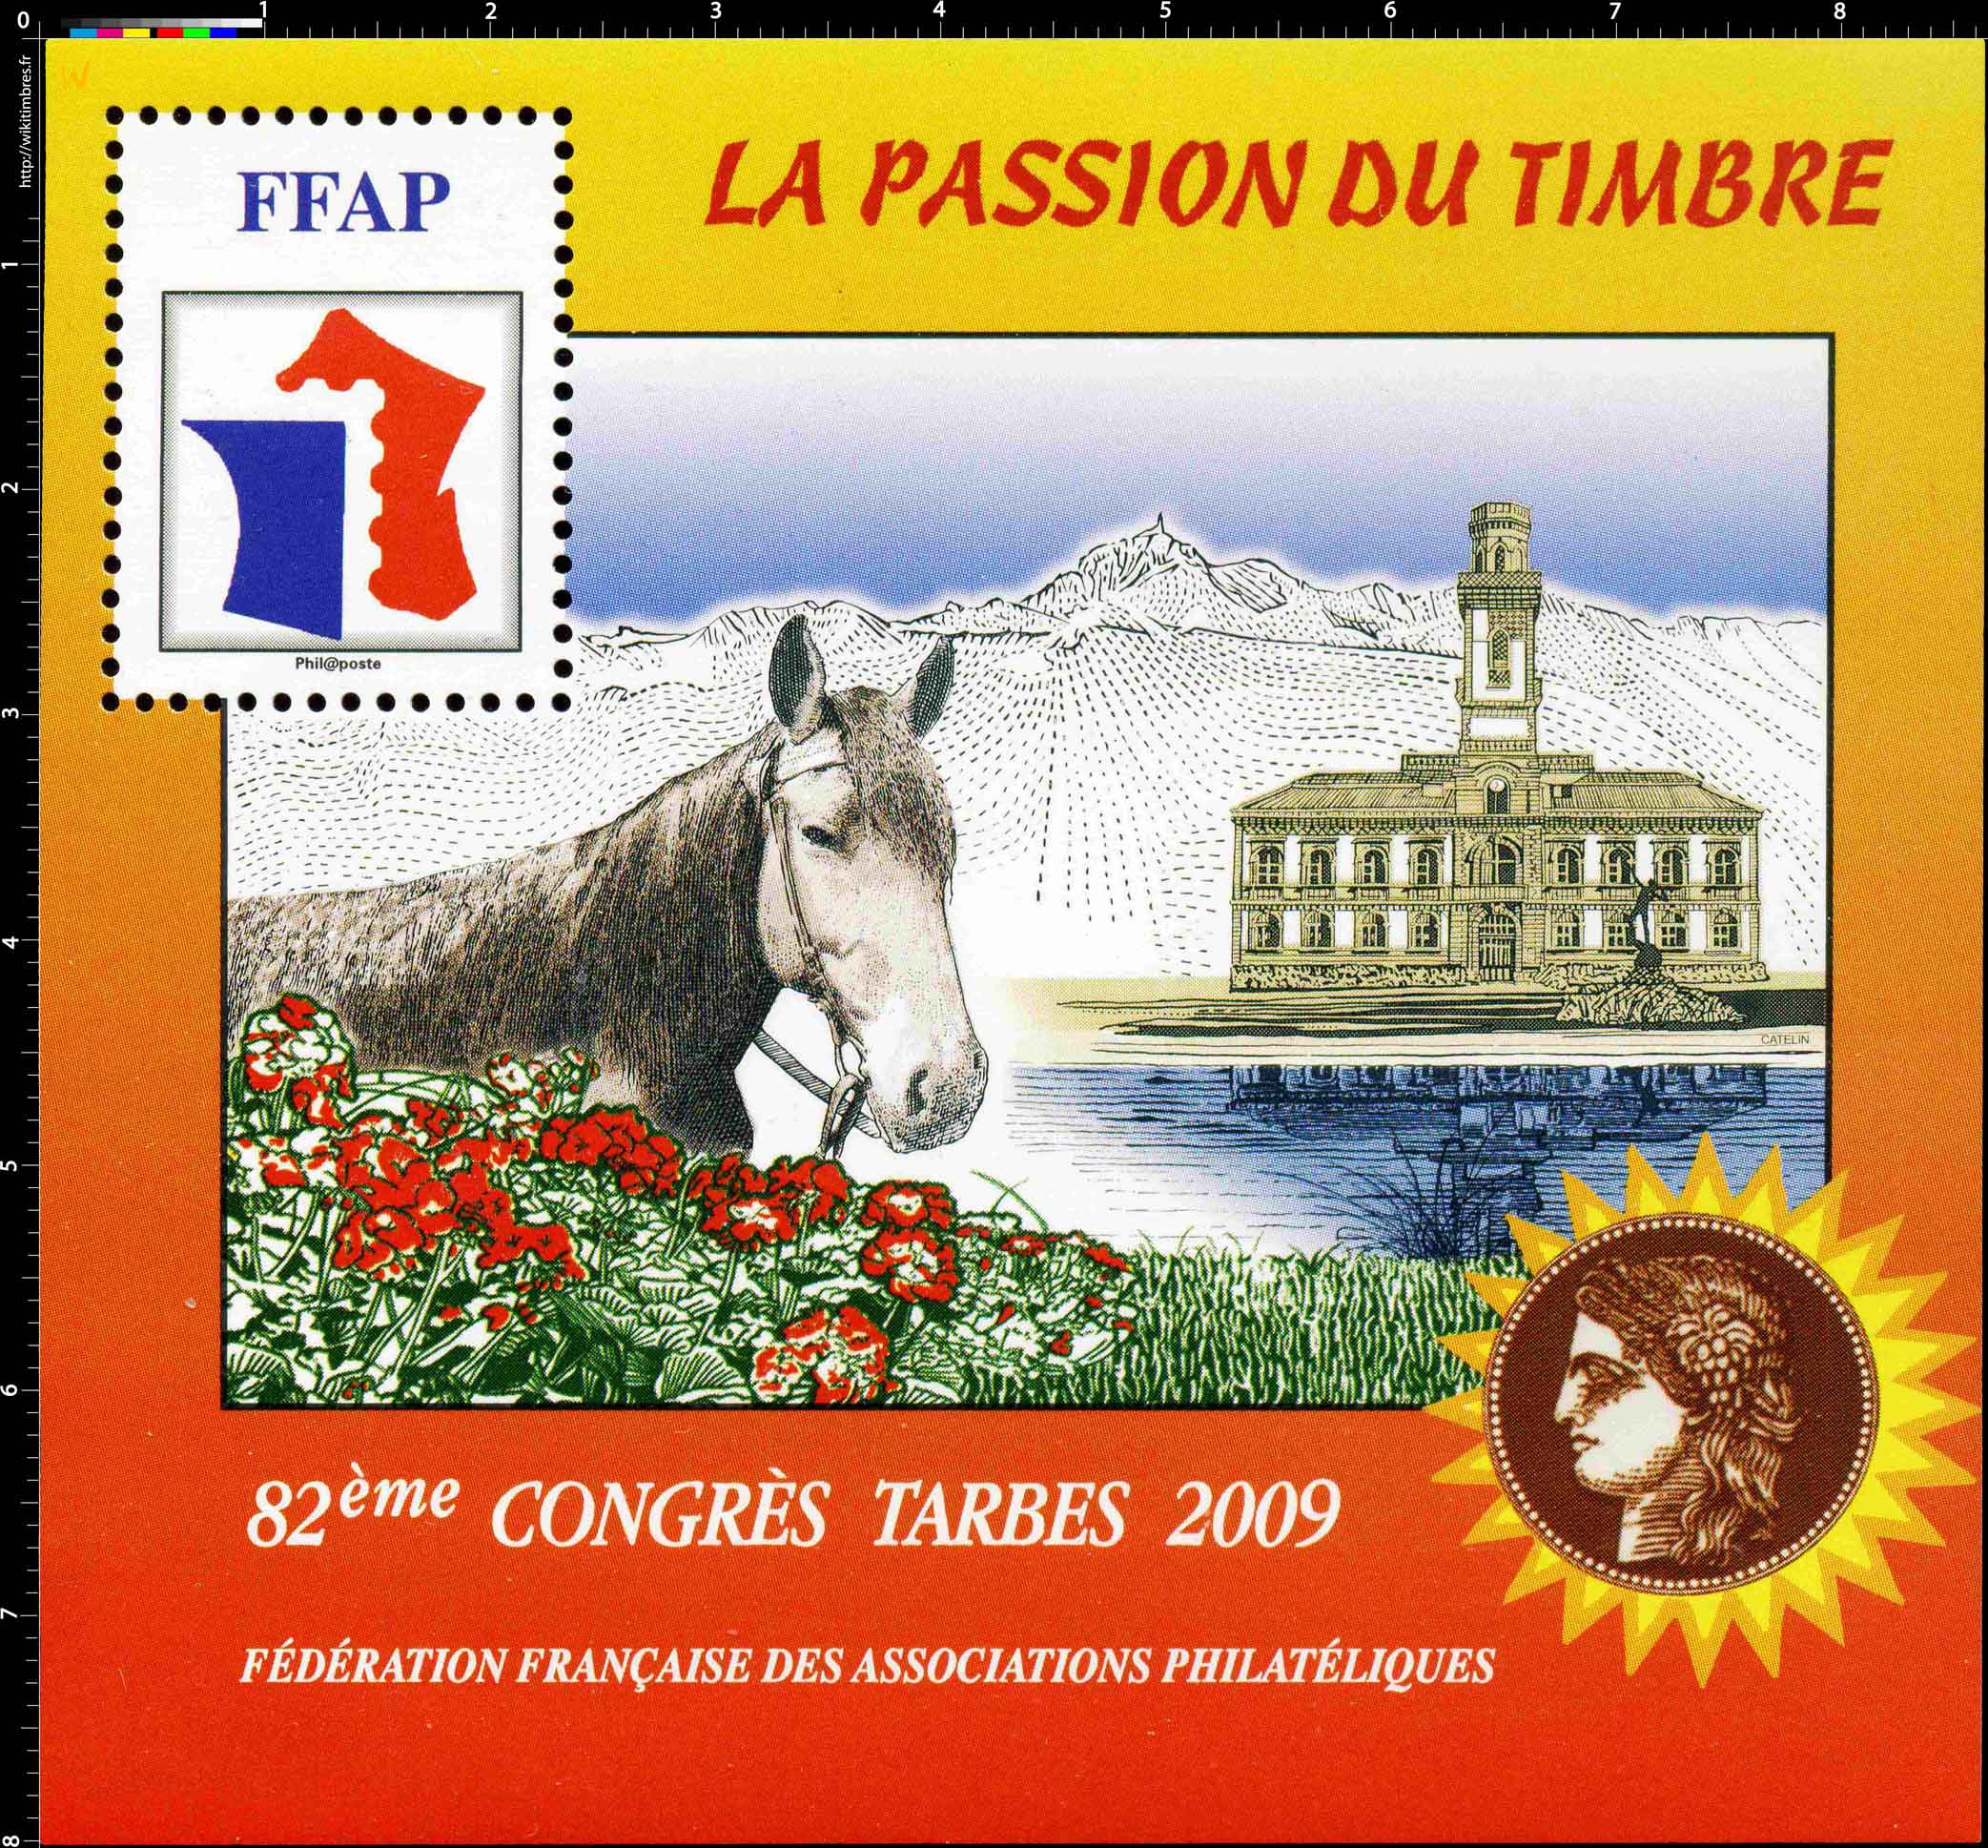 2009 82e Congrès Tarbes LA PASSION DU TIMBRE